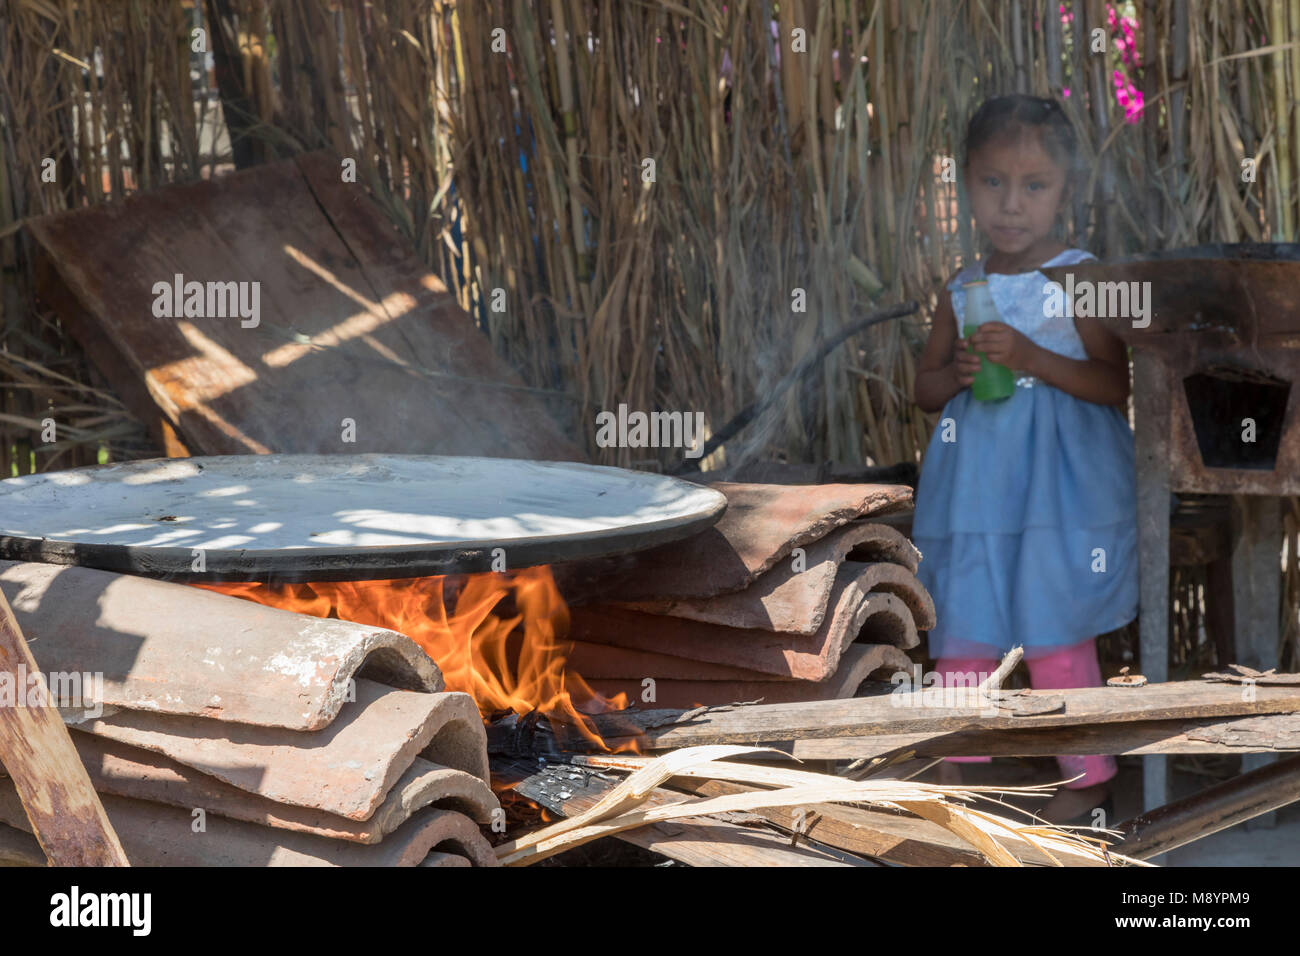 San Juan Teitipac, Oaxaca, Messico - una ragazza guarda un comal riscaldamento su un fuoco aperto durante la linguistica e fiera del patrimonio in una piccola città zapoteco. Th Foto Stock